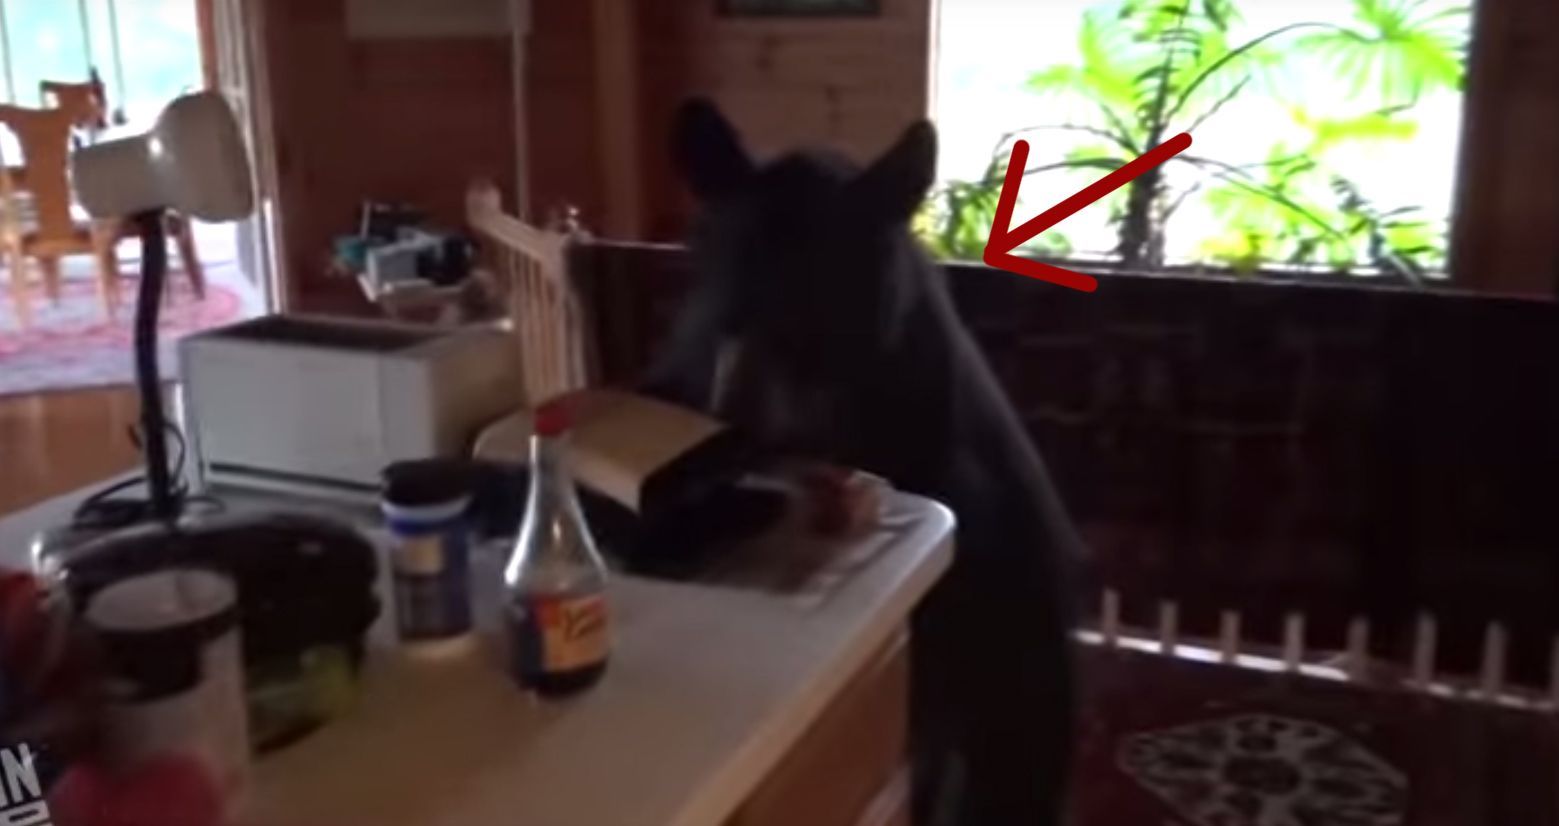 Encuentra a un oso robando comida en su cocina